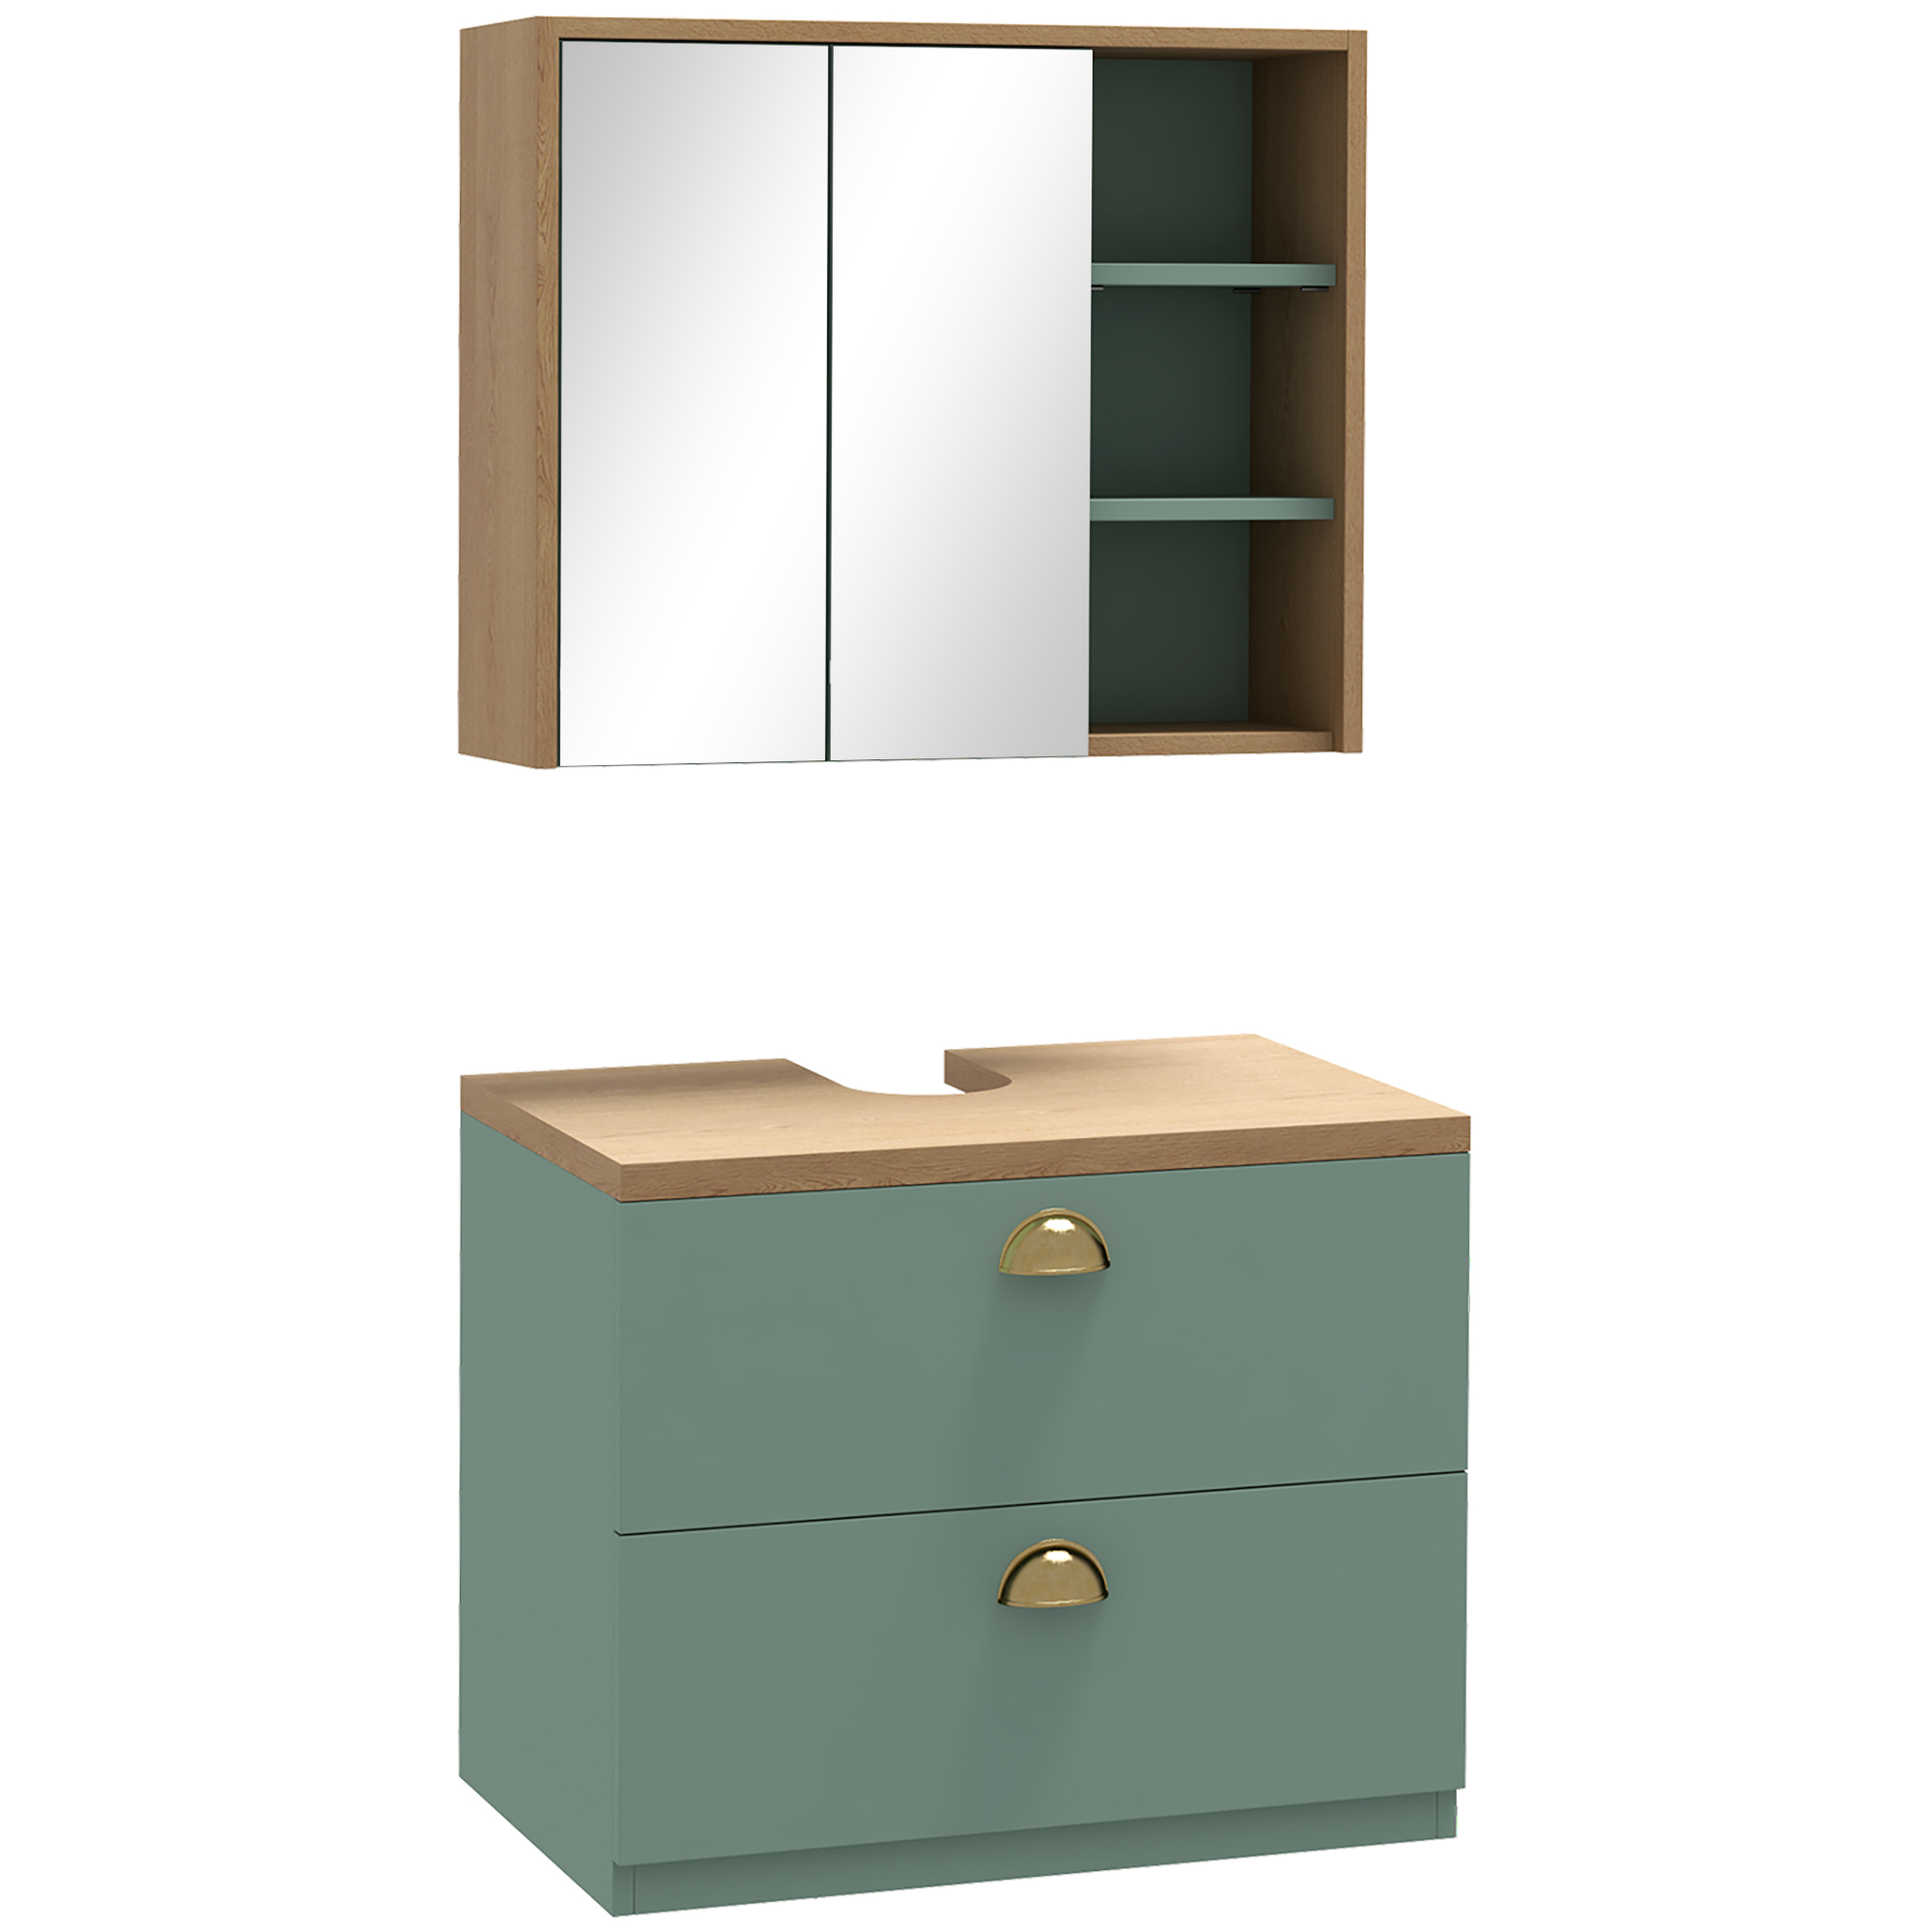 kleankin ensemble de meubles de salle de bain avec Ã©tagÃ¨res rÃ©glables 2 tiroirs design scandinave vert